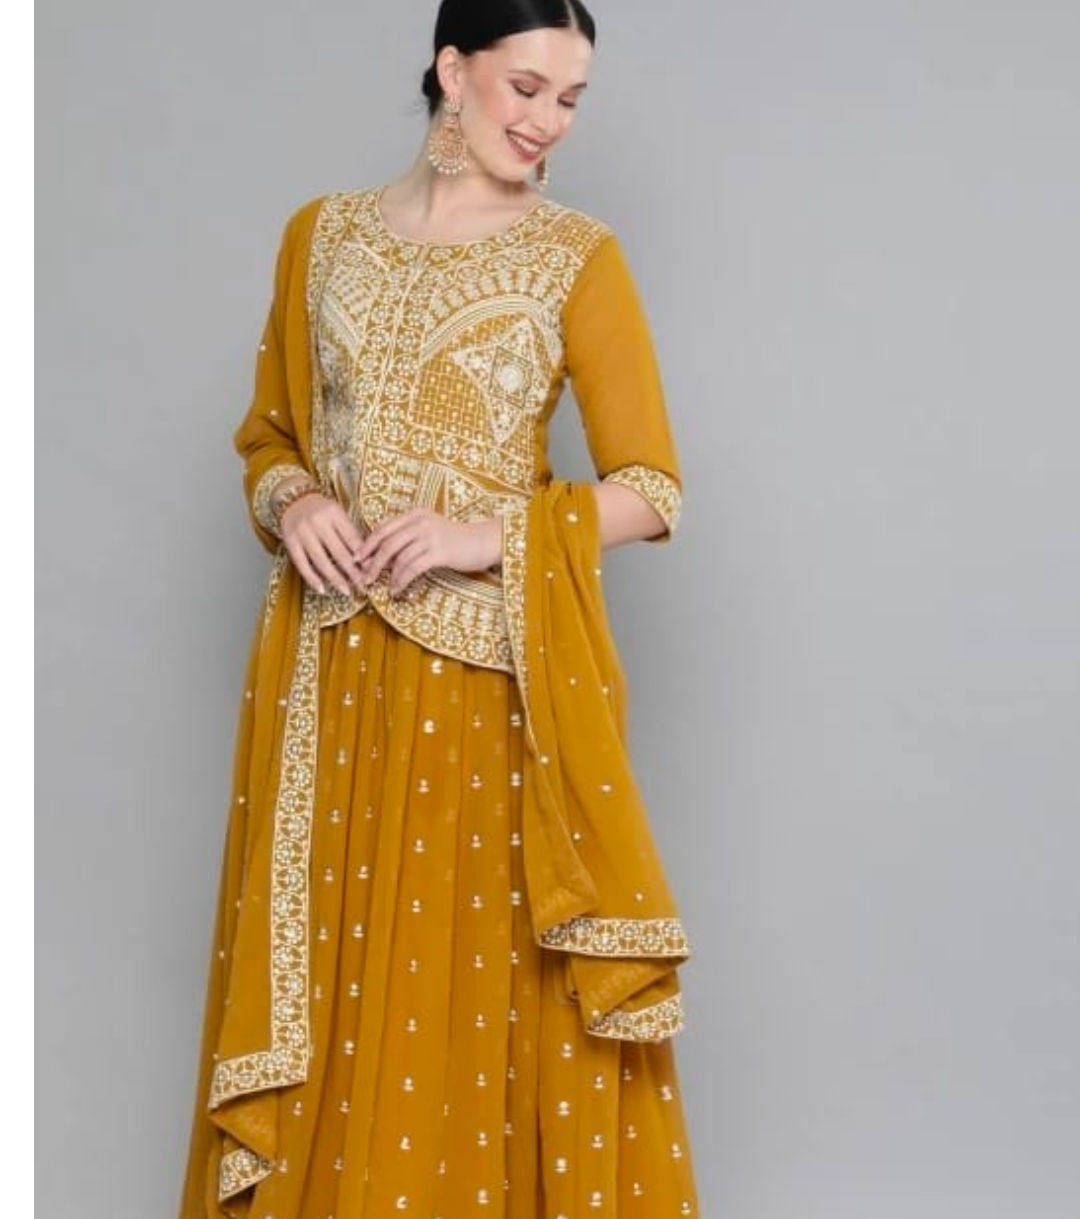 kvsfab Women Kurta and Skirt Set - Buy kvsfab Women Kurta and Skirt Set Online at Best Prices in India | Flipkart.com